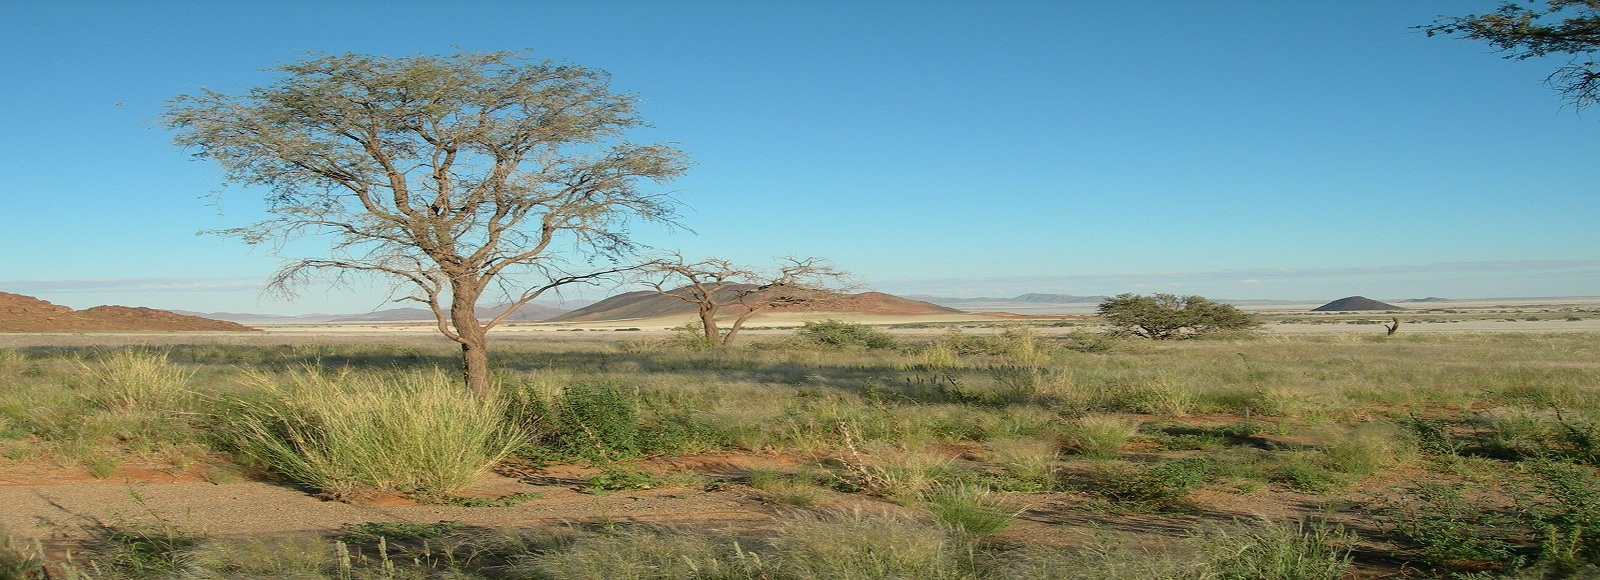 Ofertas de Traslados en Namibia. Traslados económicos en Namibia 